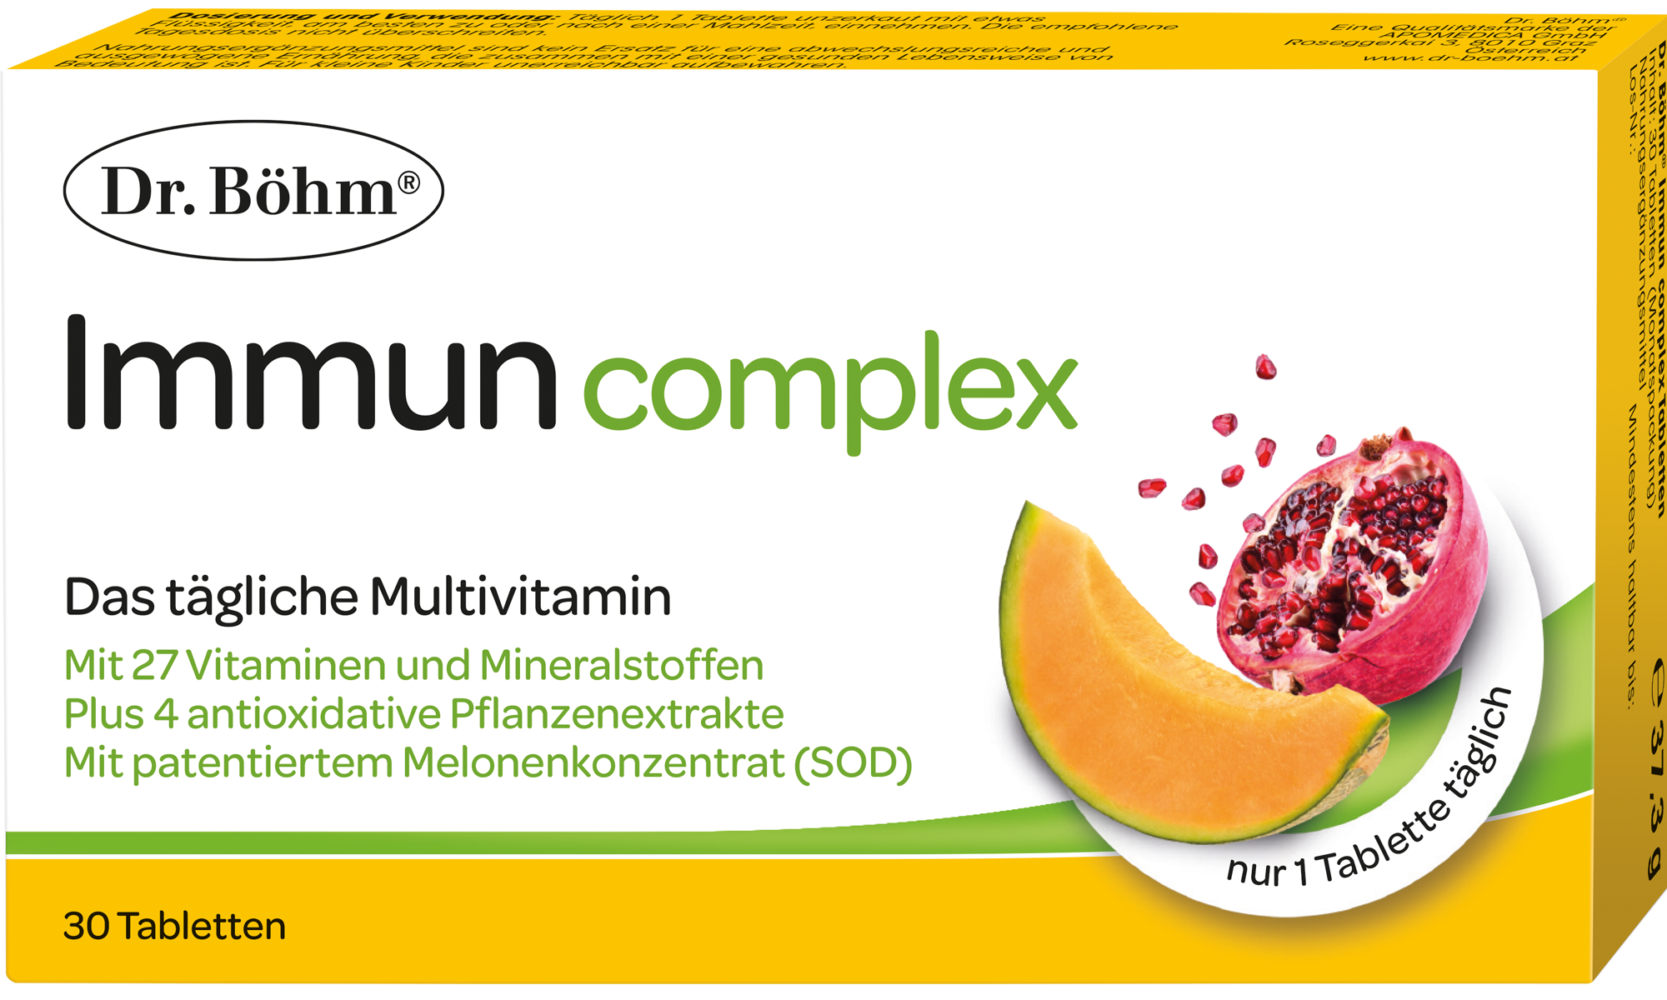 Dr. Böhm® Immun complex Tabletten - das tägliche Multvitamin